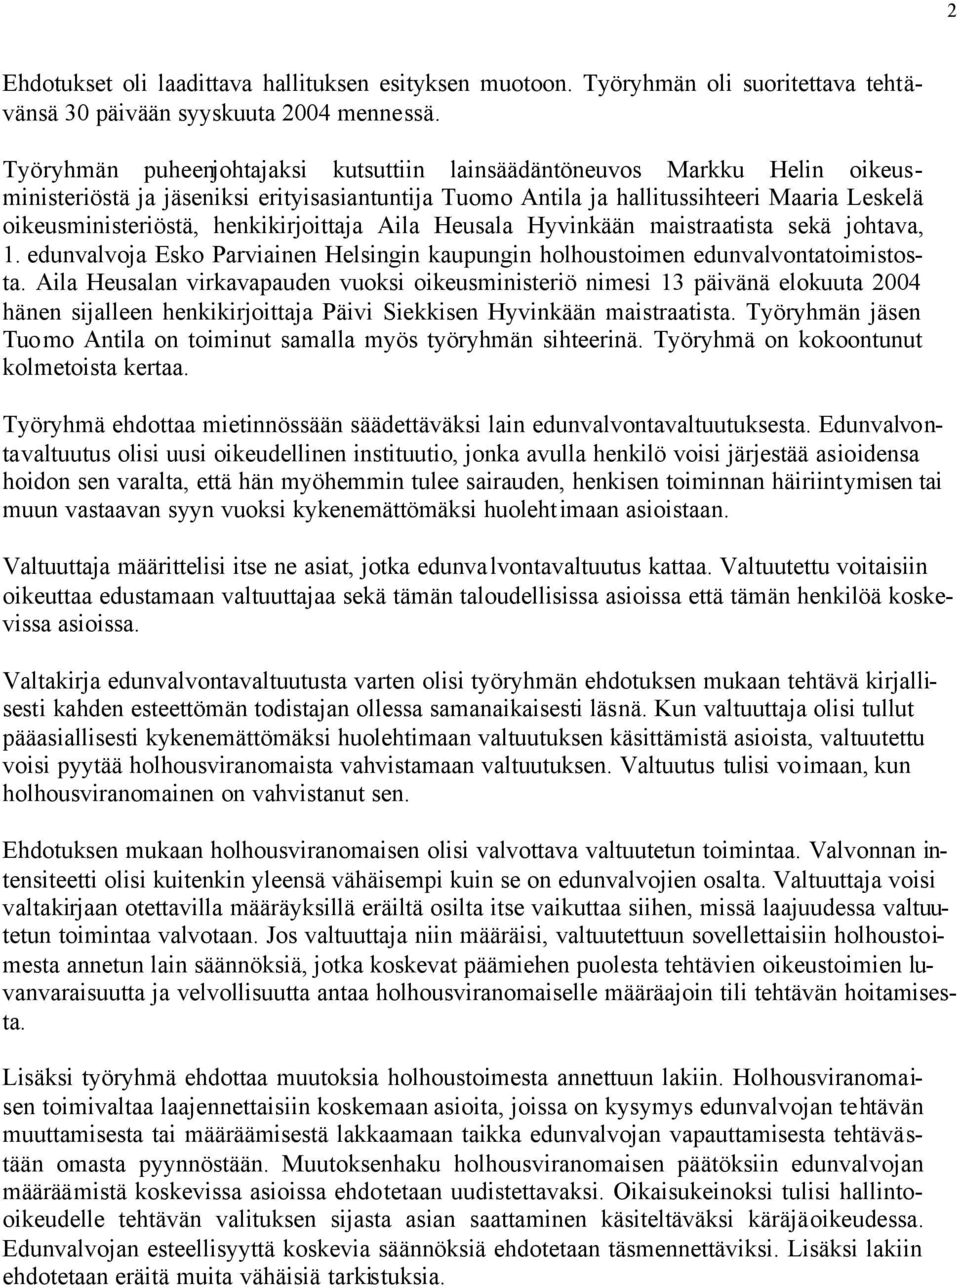 henkikirjoittaja Aila Heusala Hyvinkään maistraatista sekä johtava, 1. edunvalvoja Esko Parviainen Helsingin kaupungin holhoustoimen edunvalvontatoimistosta.